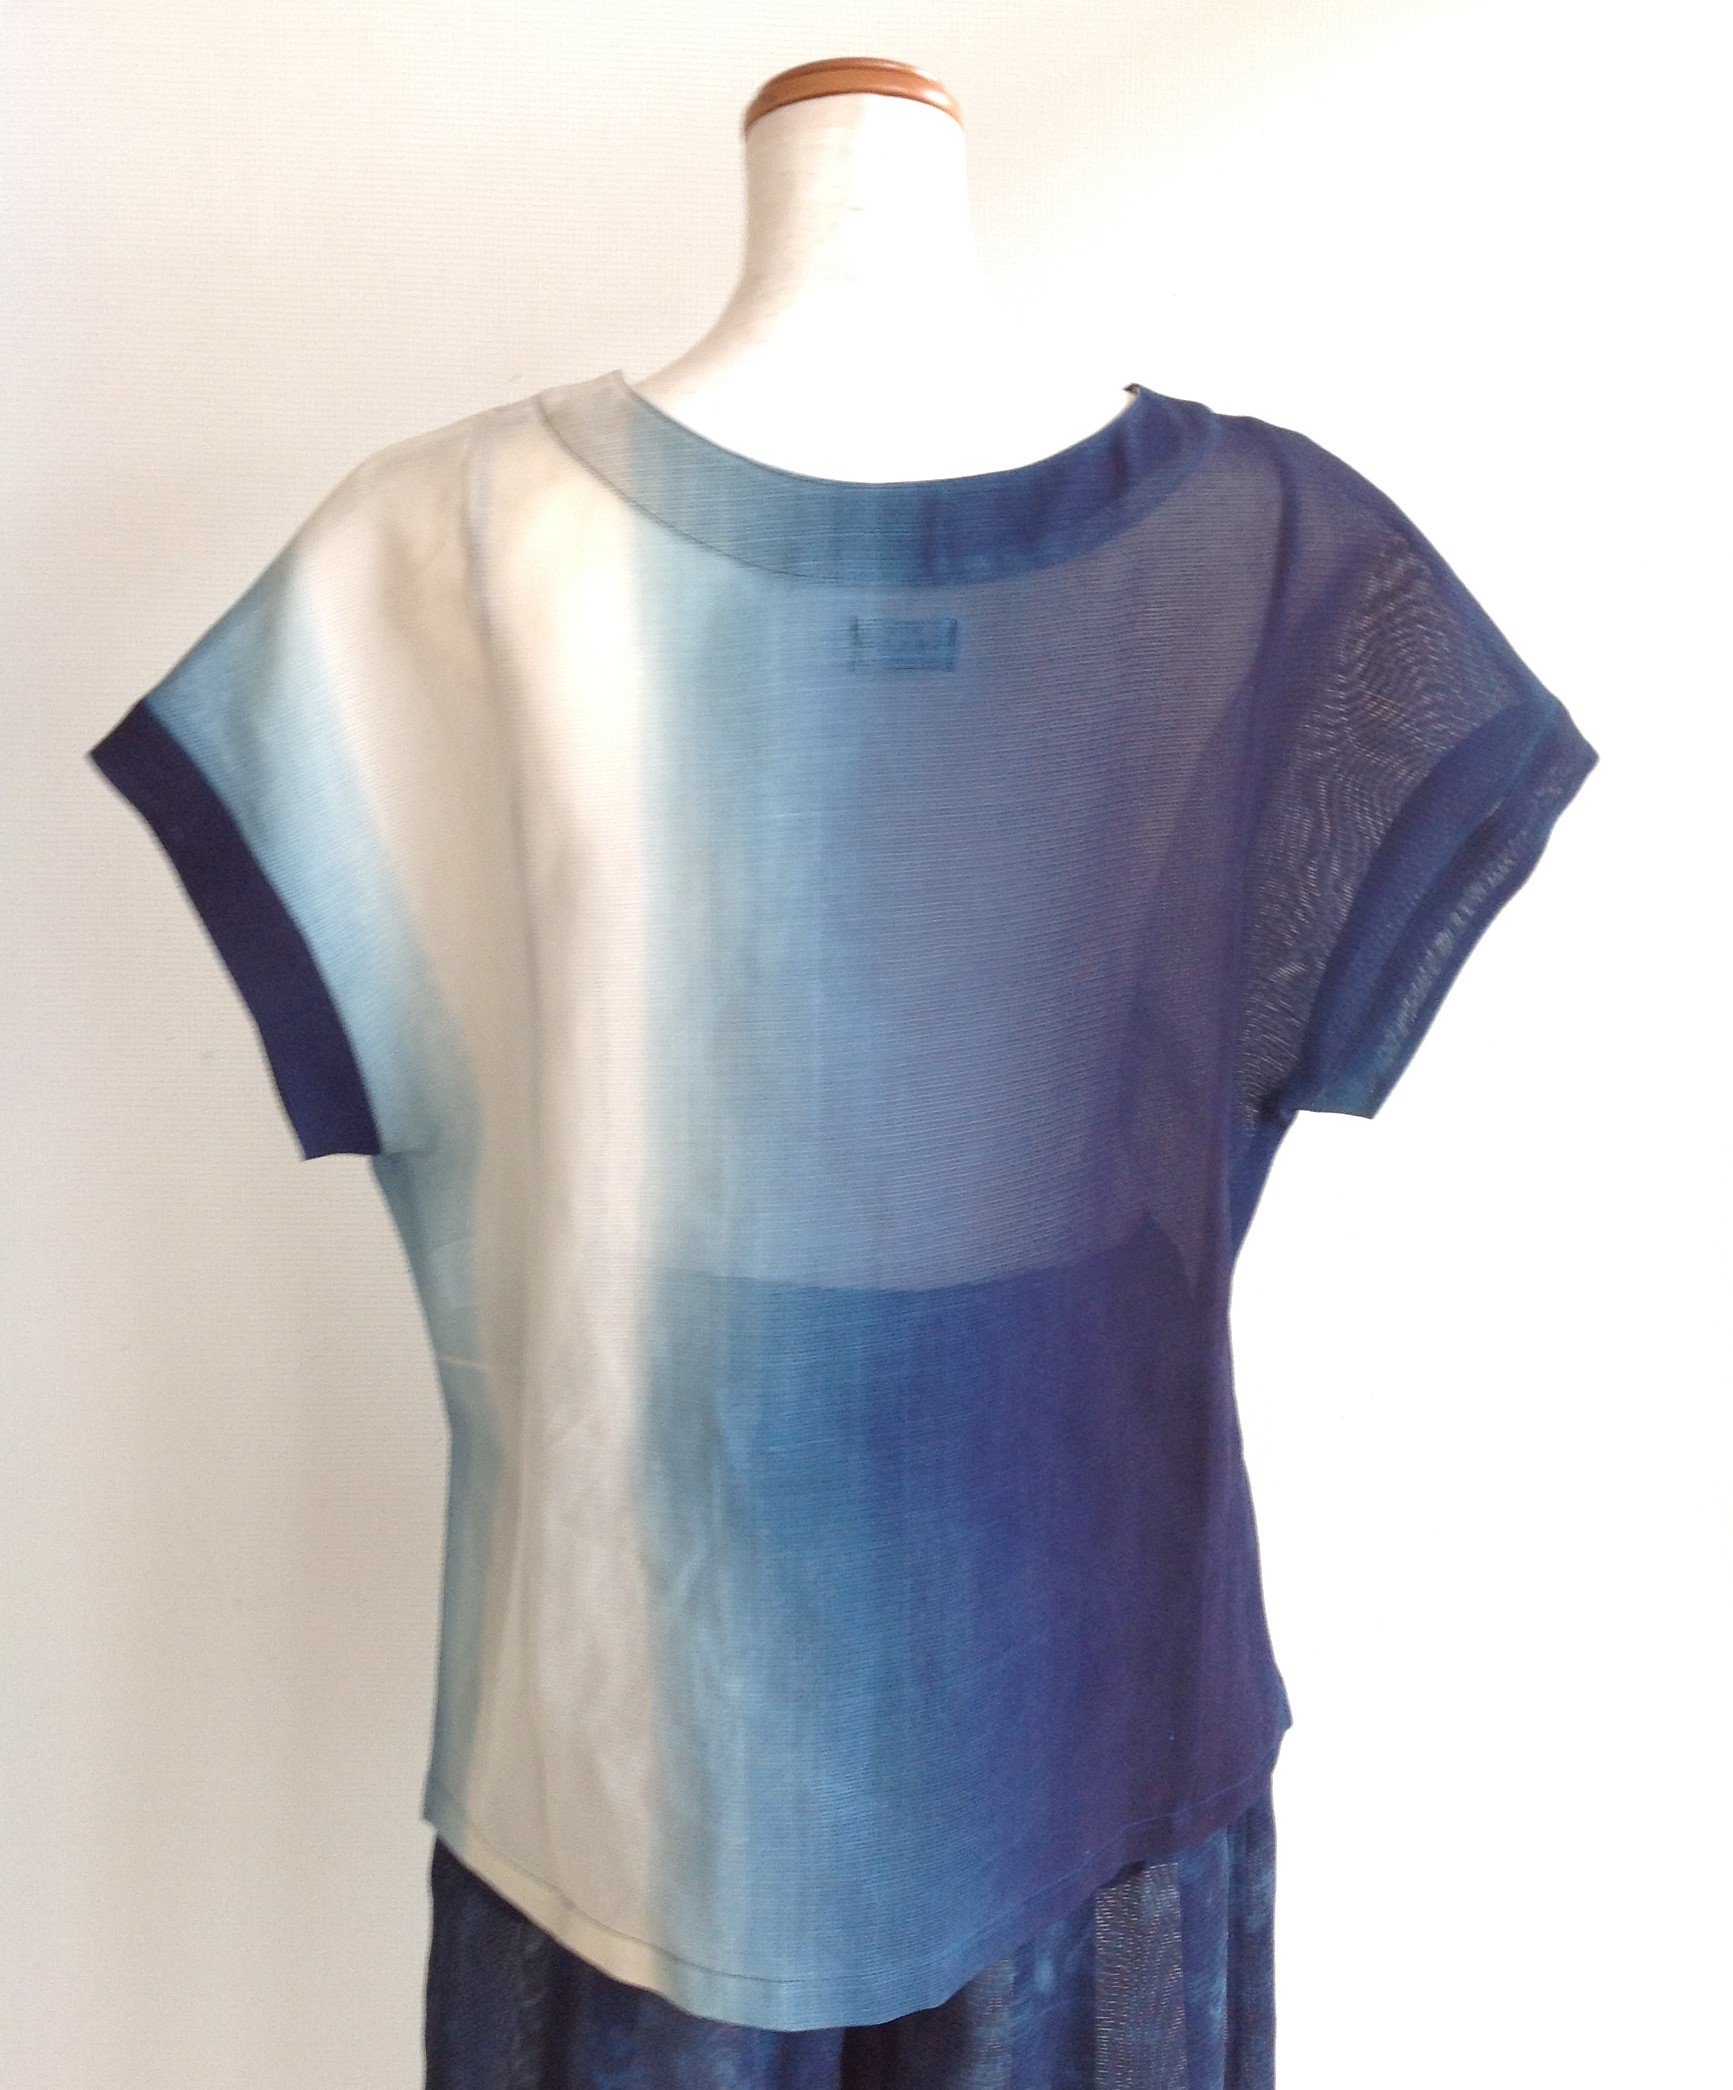 伝統織物のトップブランド夏塩沢に本藍染めを施した洋服オリジナル